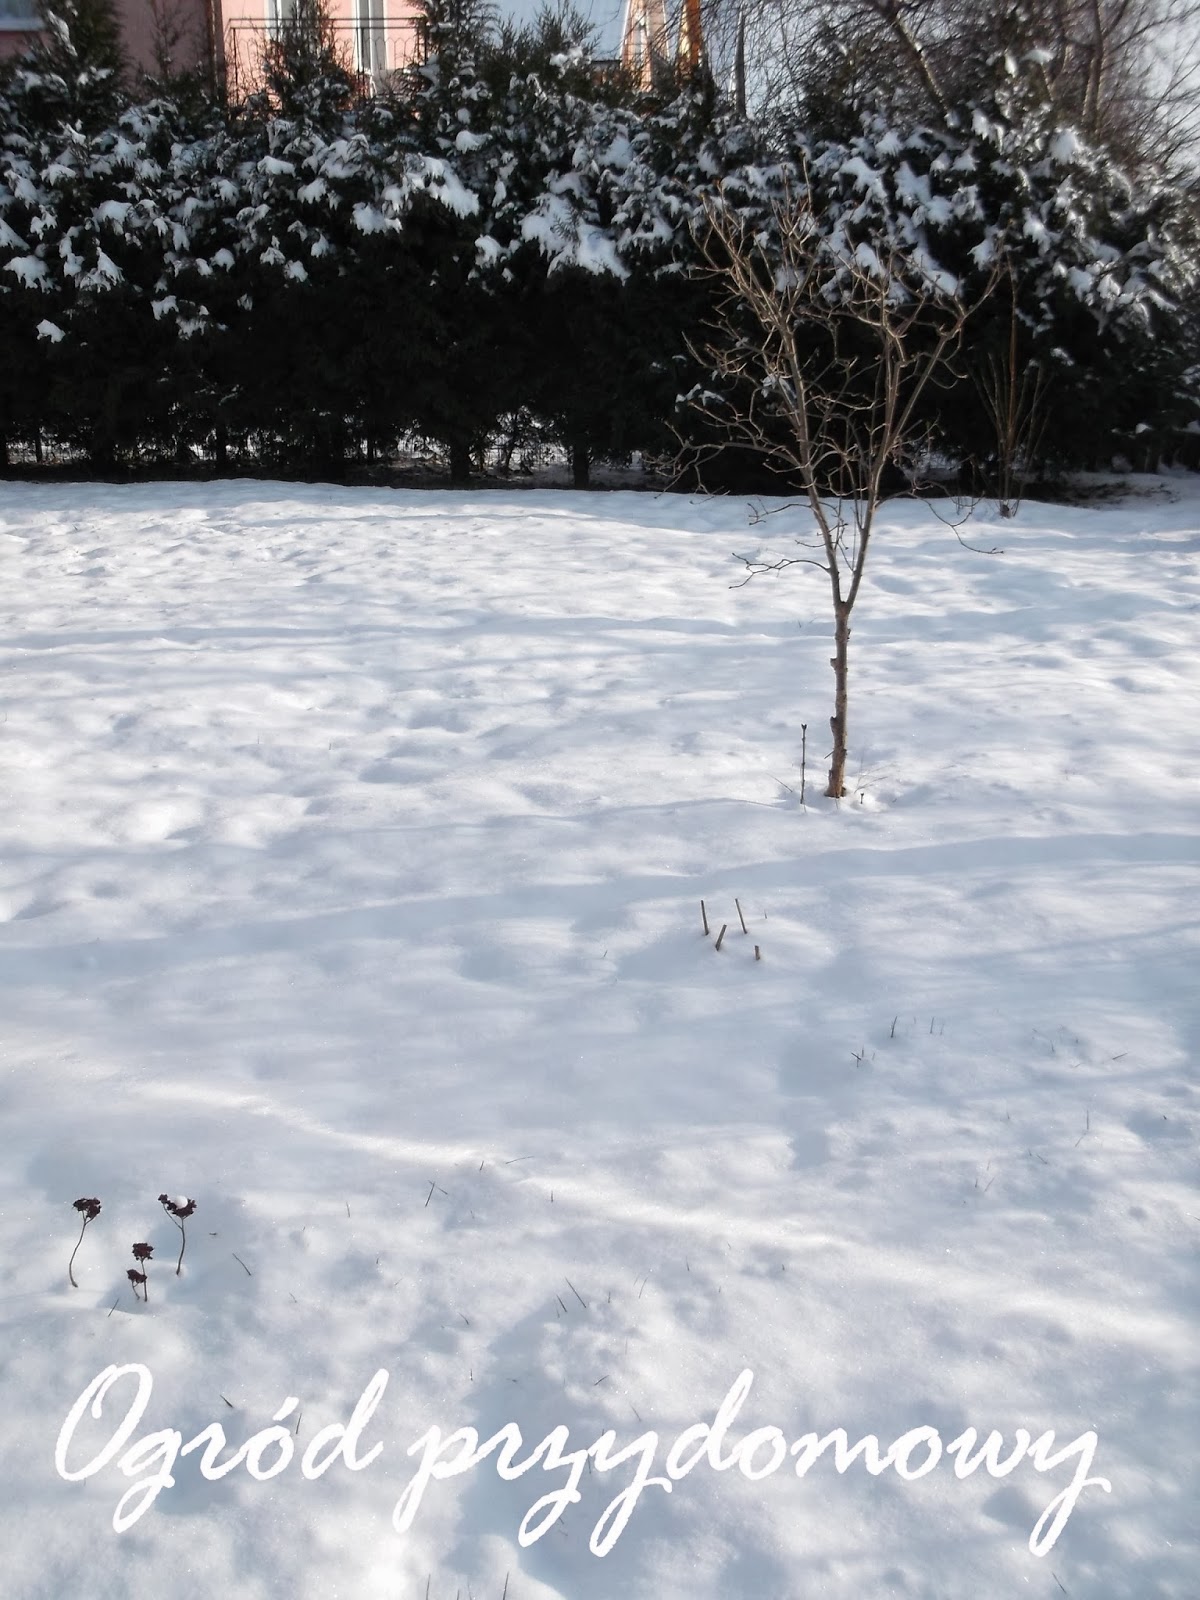 śnieg w ogrodzie, ogród przydomowy